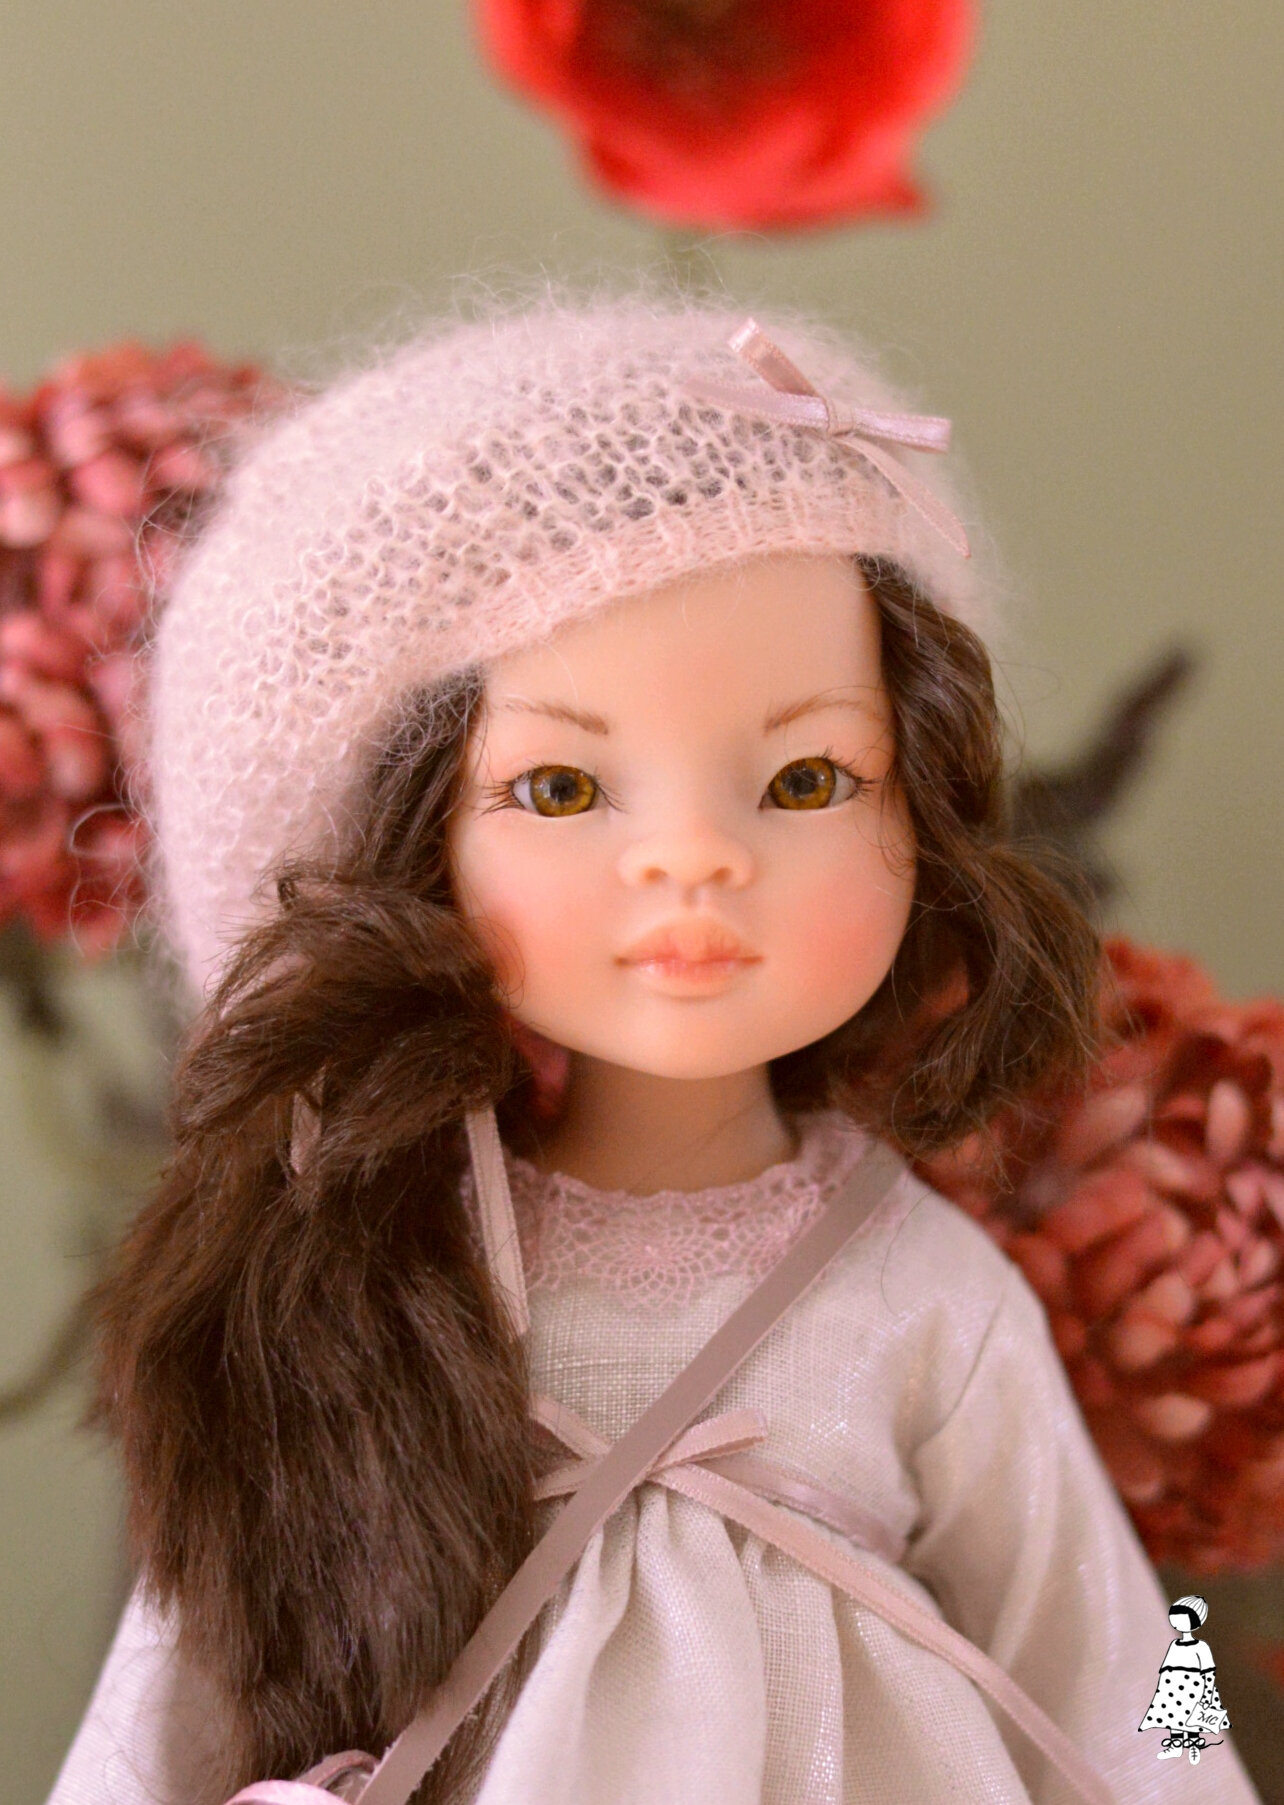 Lily ou la naissance d'une poupée - Les ateliers Mina couture: Art doll